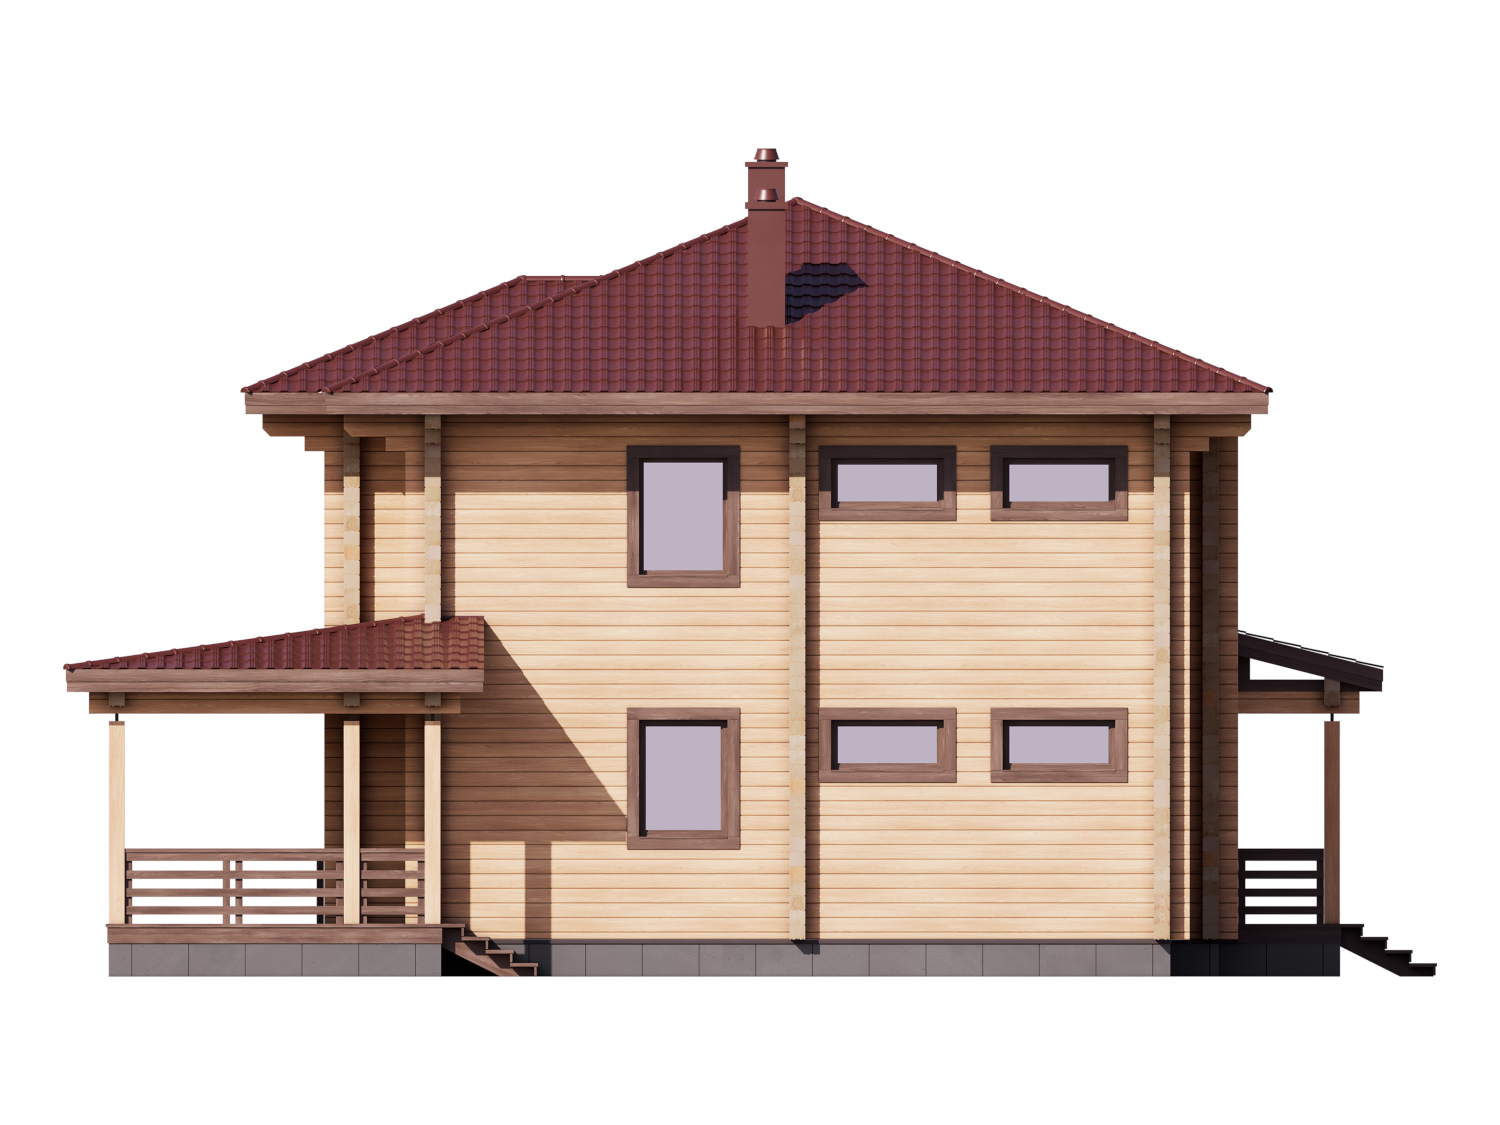 1-66 Проект двухэтажного деревянного дома из бруса